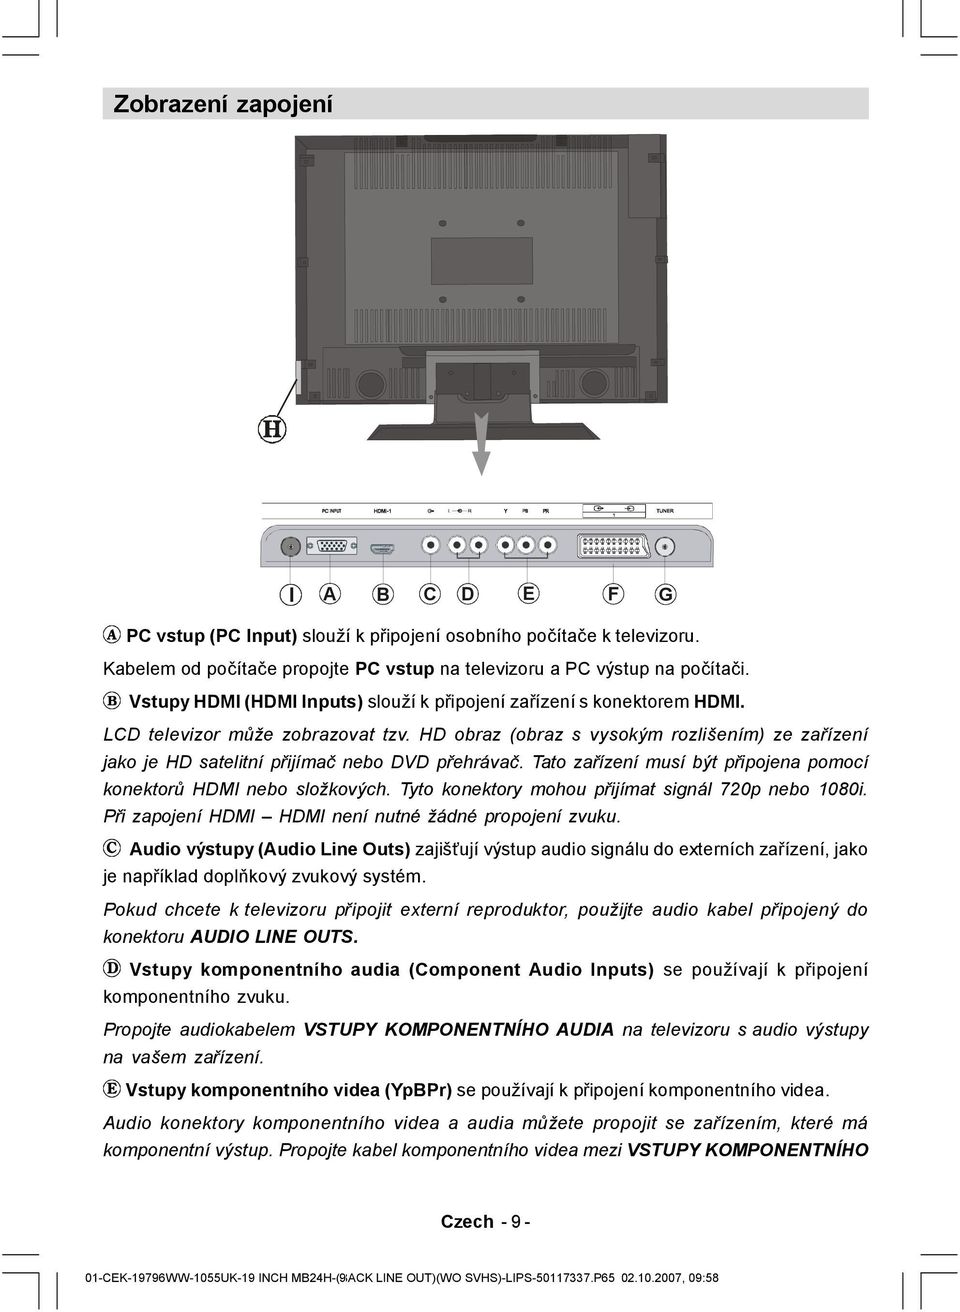 HD obraz (obraz s vysokým rozlišením) ze zařízení jako je HD satelitní přijímač nebo DVD přehrávač. Tato zařízení musí být připojena pomocí konektorů HDMI nebo složkových.